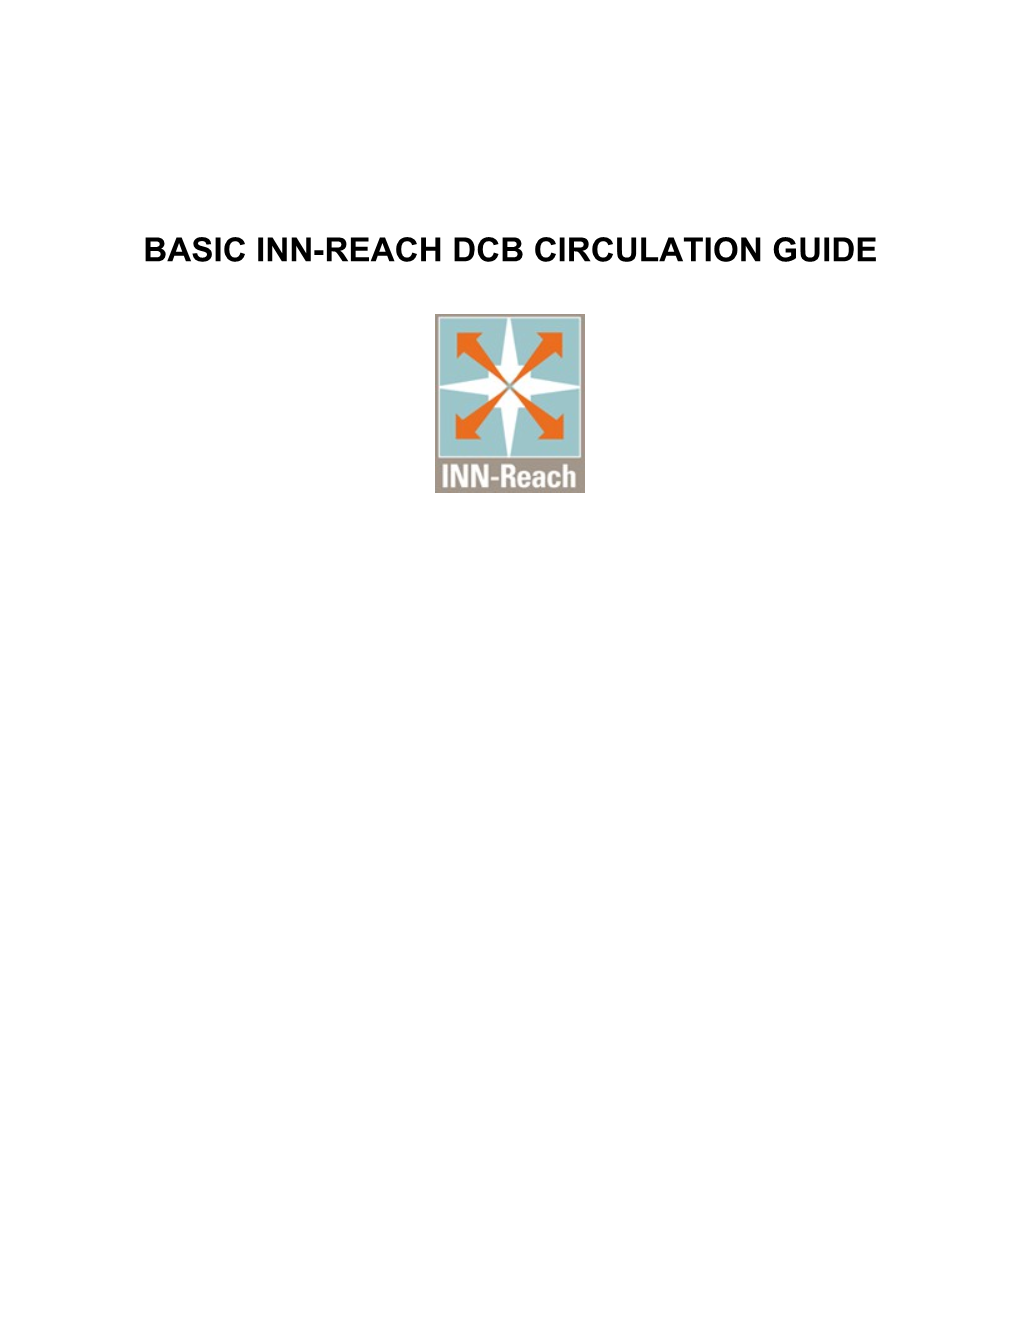 INN-Reach Training Flow-Chart Checklist